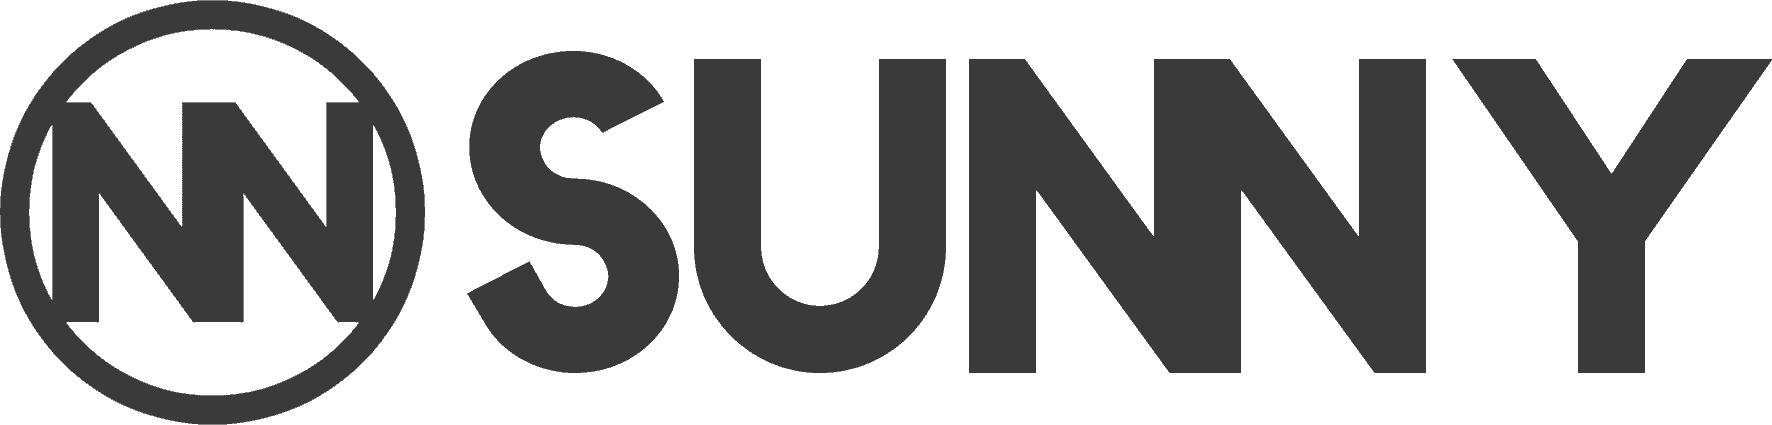 Logo Sunny agence communication digitale et événementielle Luberon Vaucluse